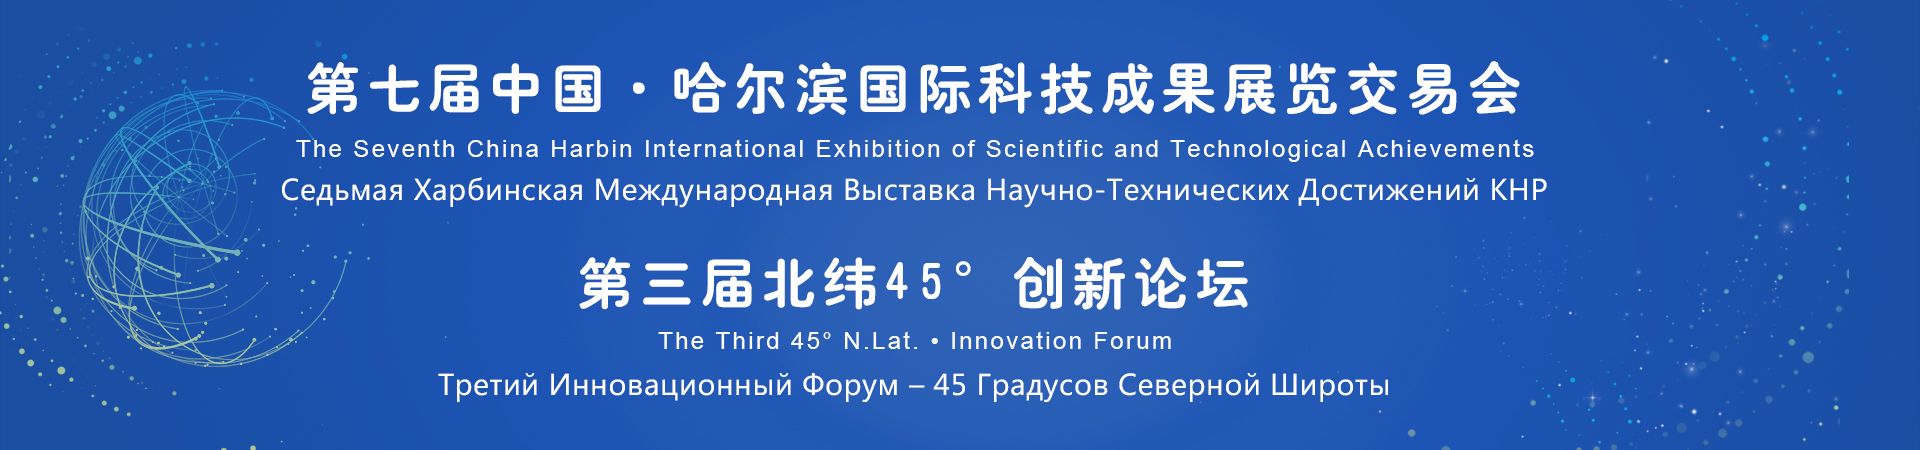 Седьмая Харбинская Международная Выставка Научно-Технических Достижений и Третий Инновационный Форум «45 Северной Широты»